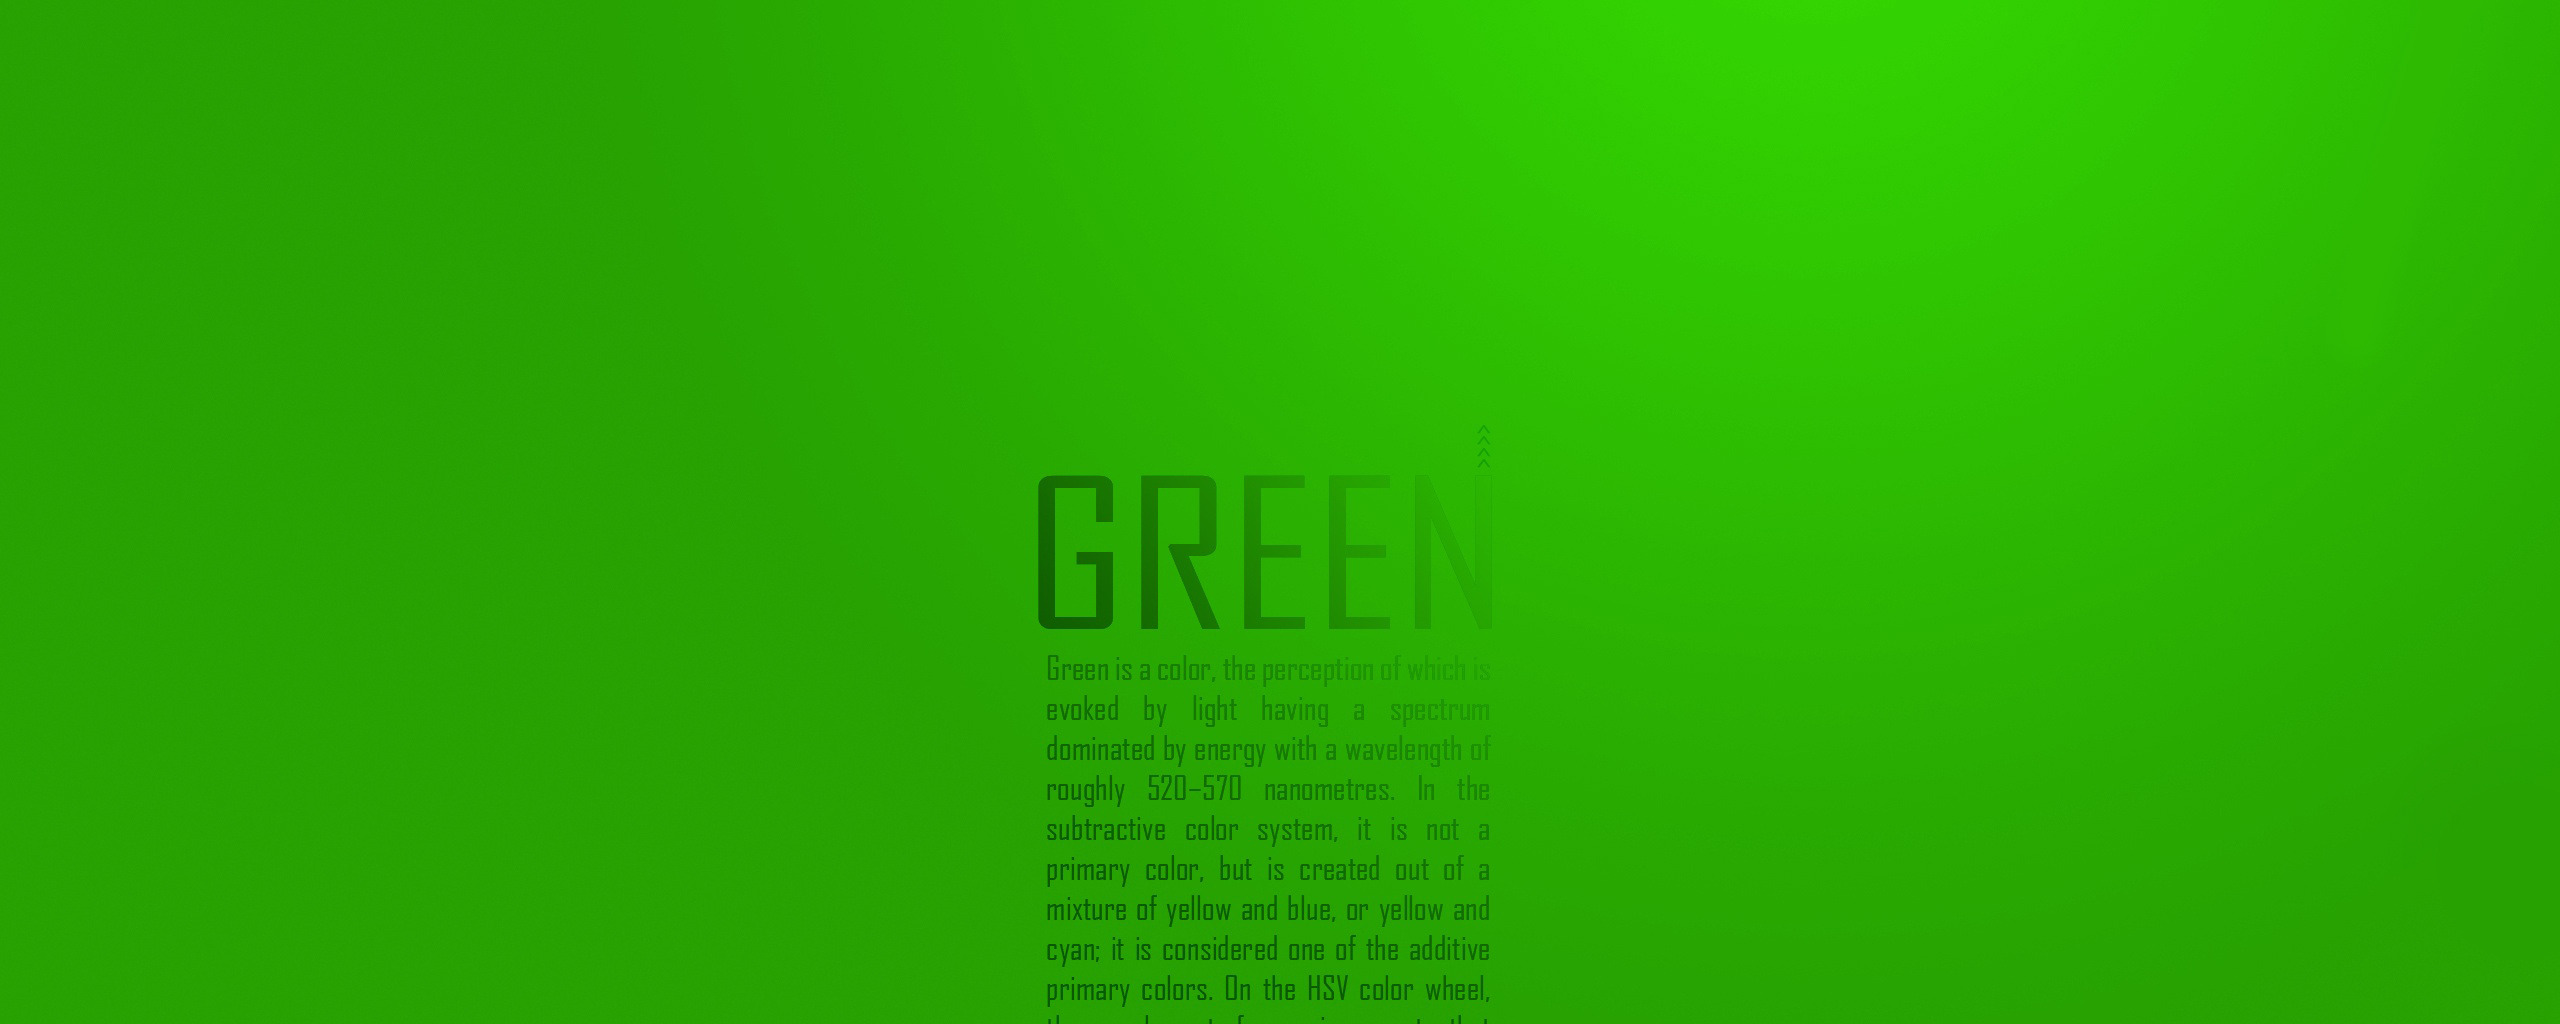 Как сделать текст зеленым. Цвет текста на зеленом фоне. Надпись на салатовом фоне. Зеленый фон для текста. Цвет текста на салатовом фоне.